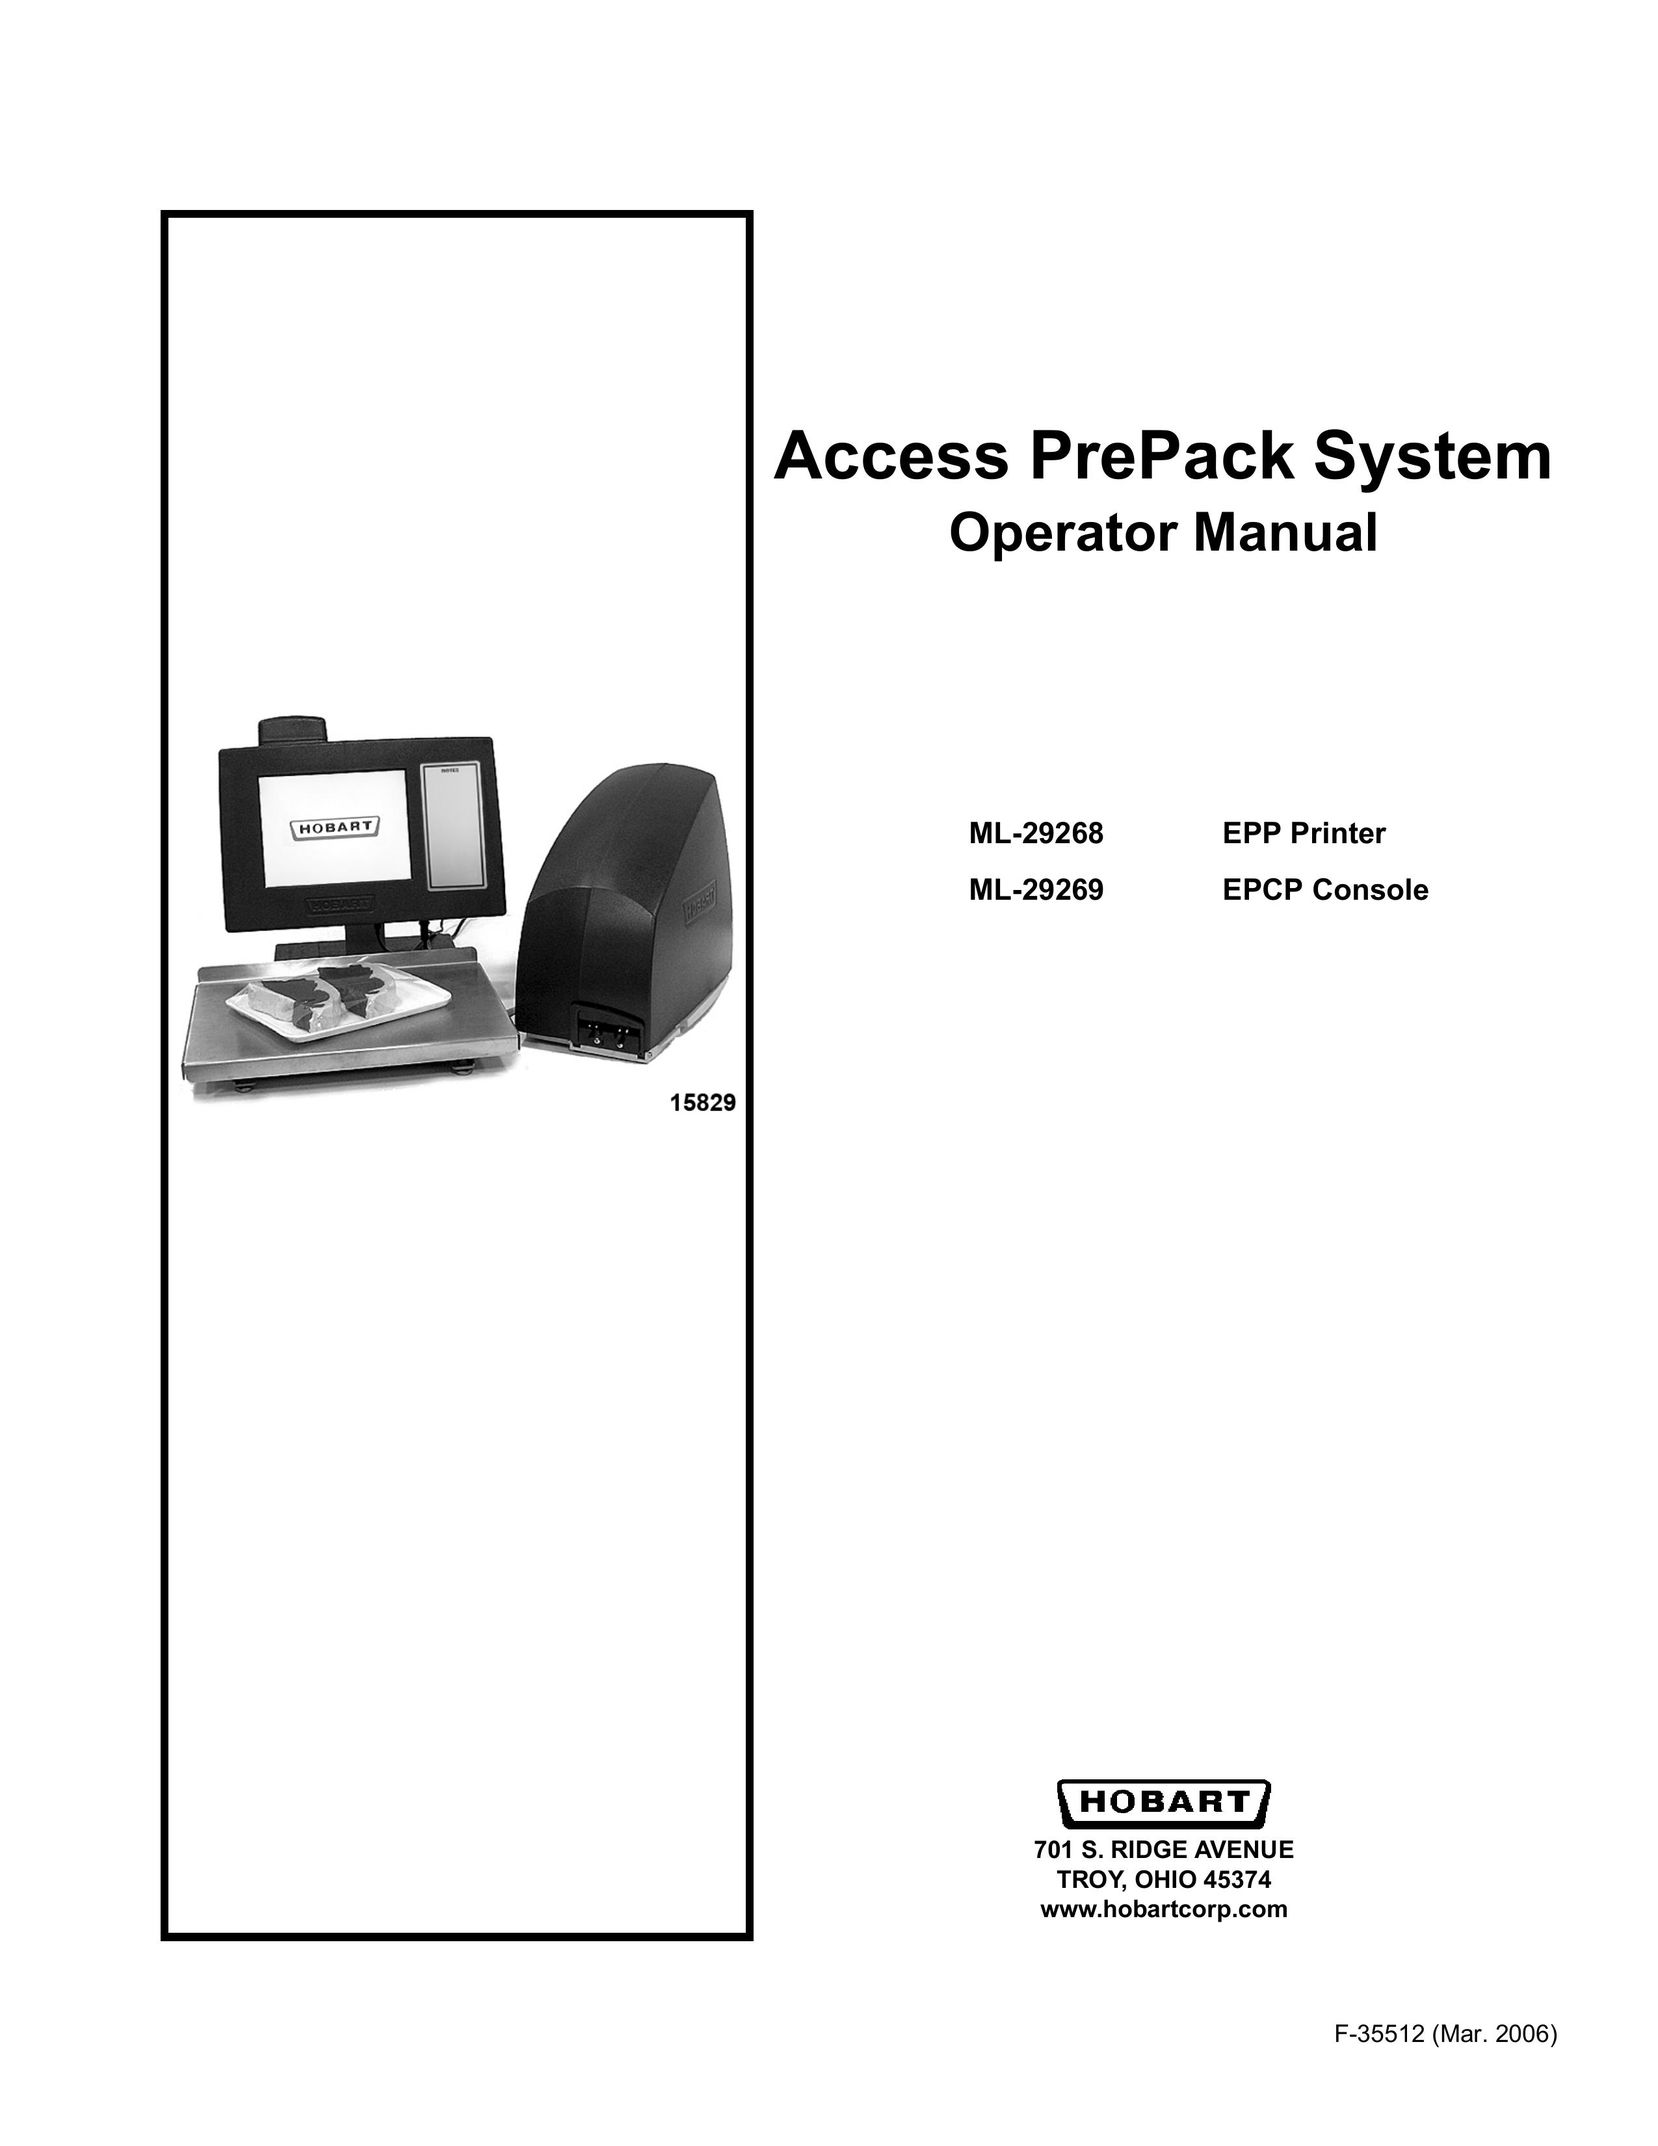 Hobart ML-29269 Printer User Manual